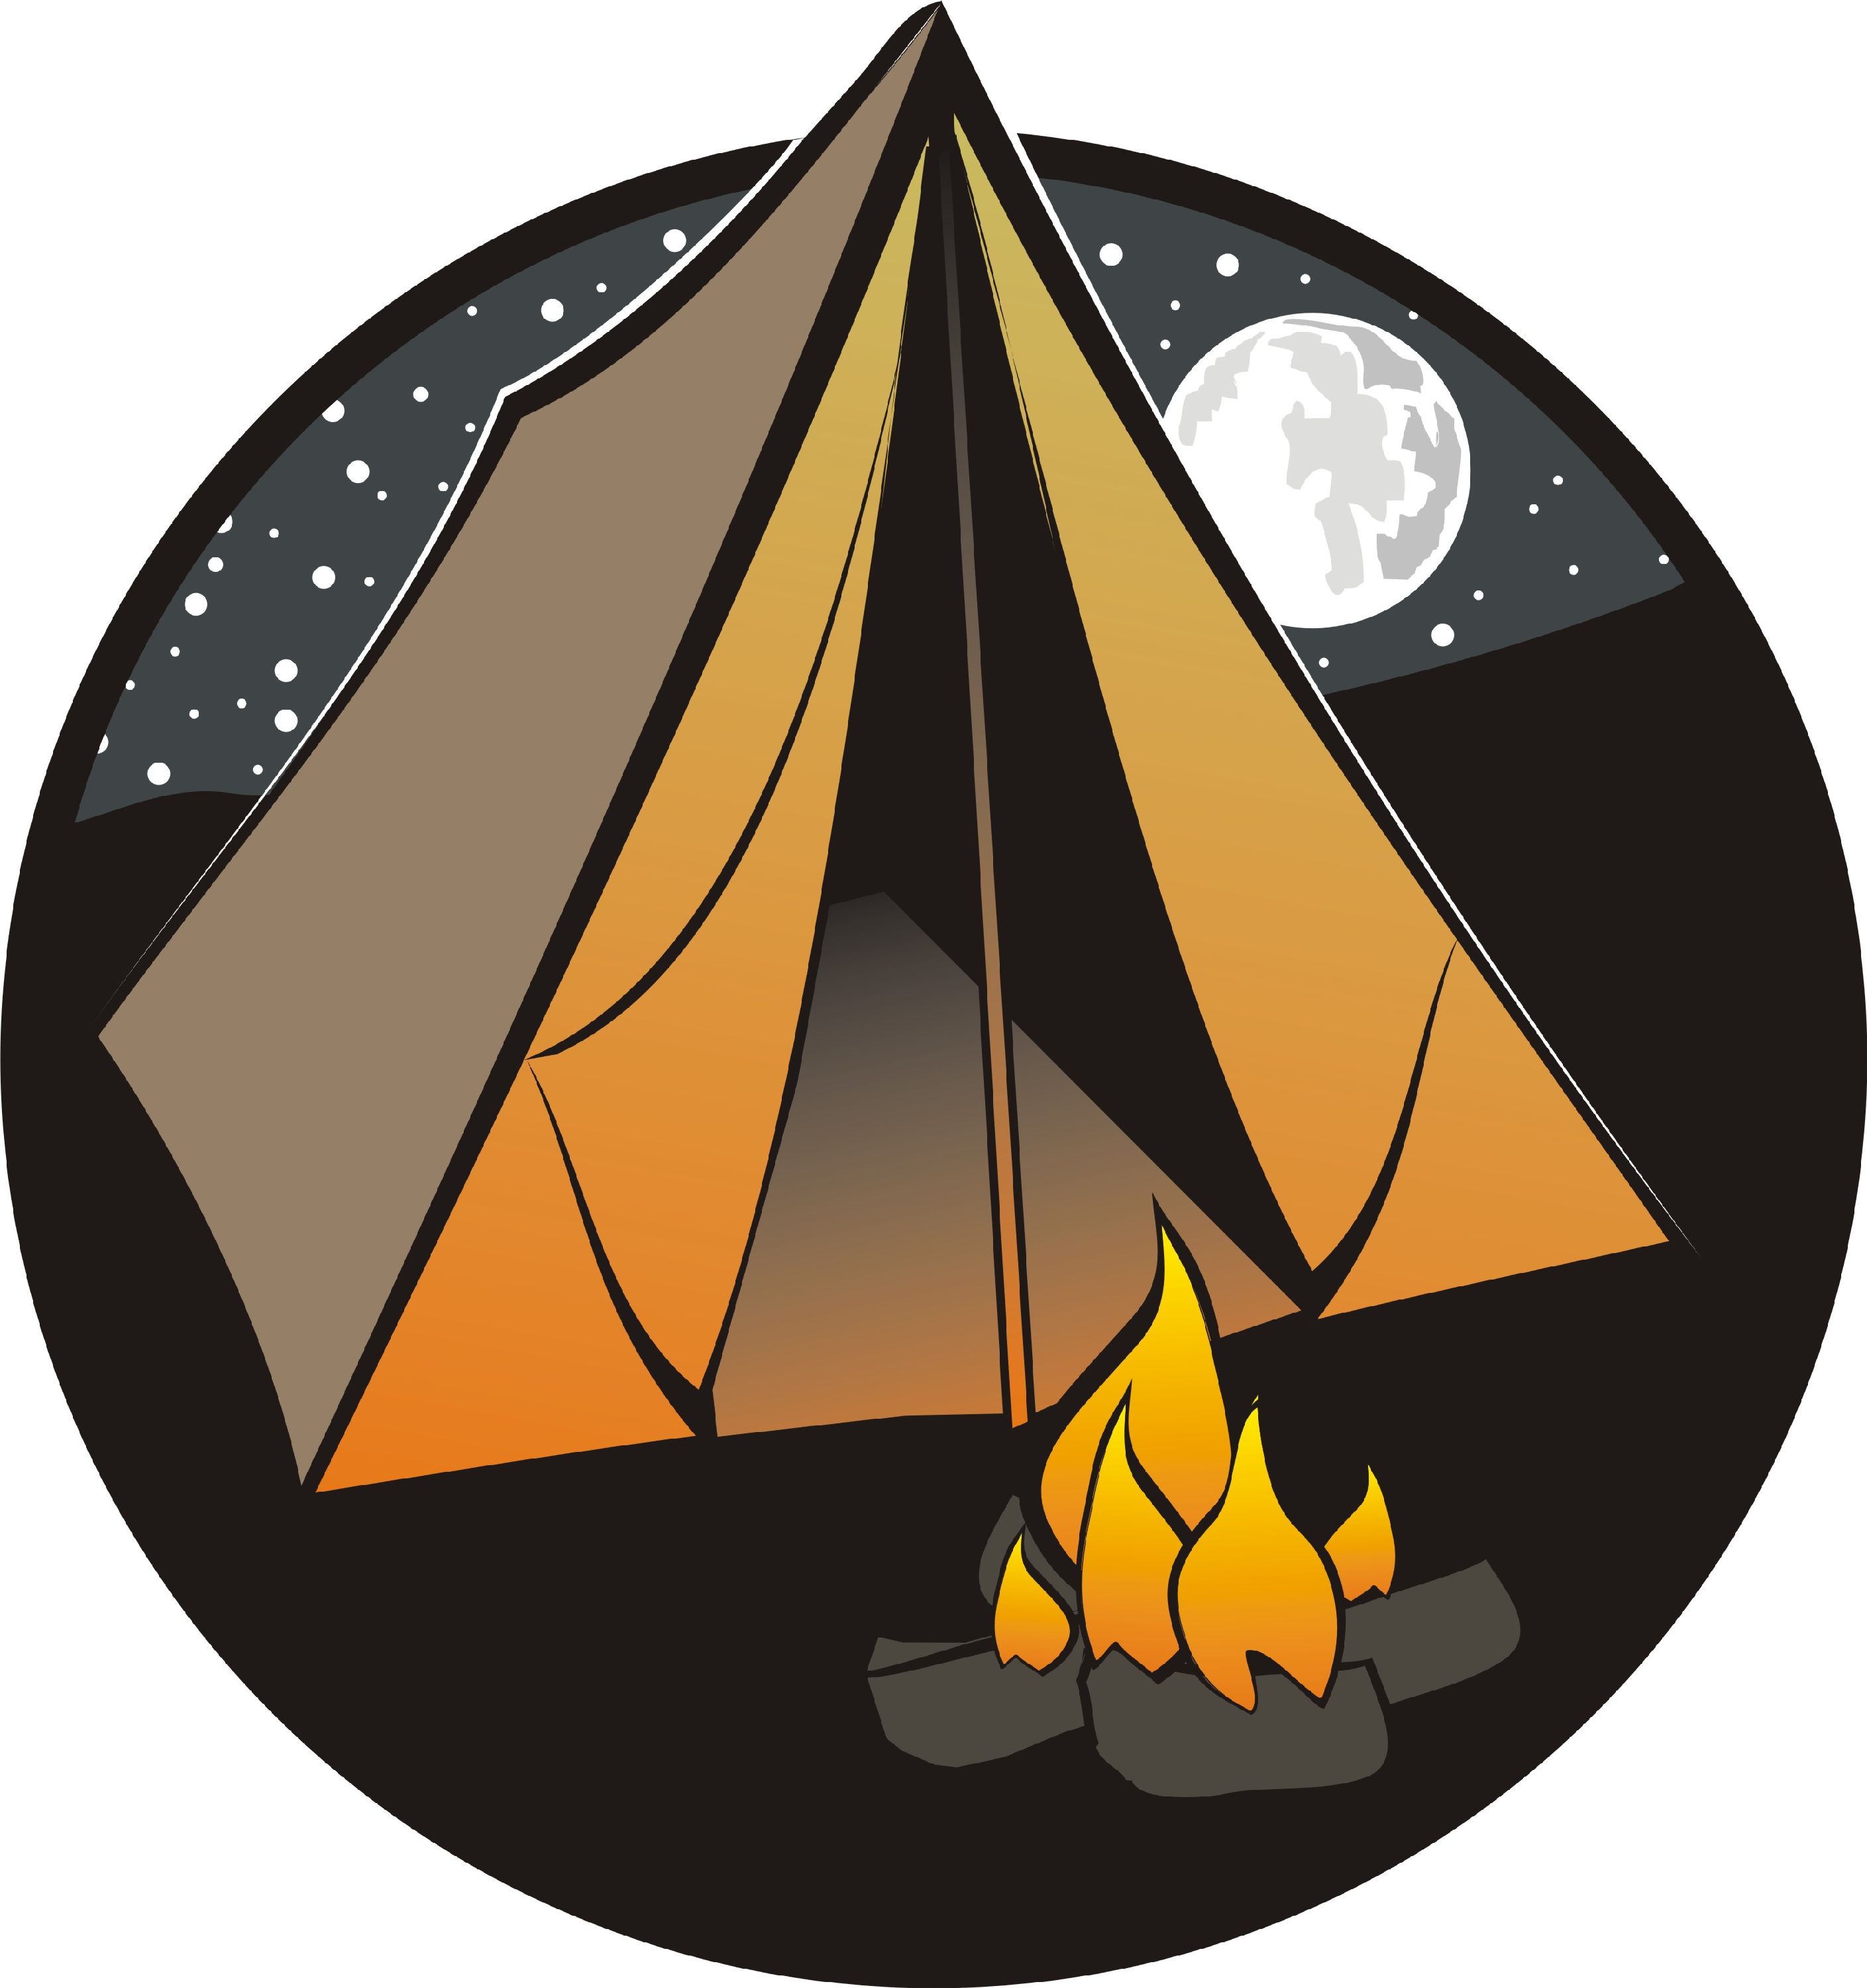 Camping tent clip art free dromfgc top clipartix